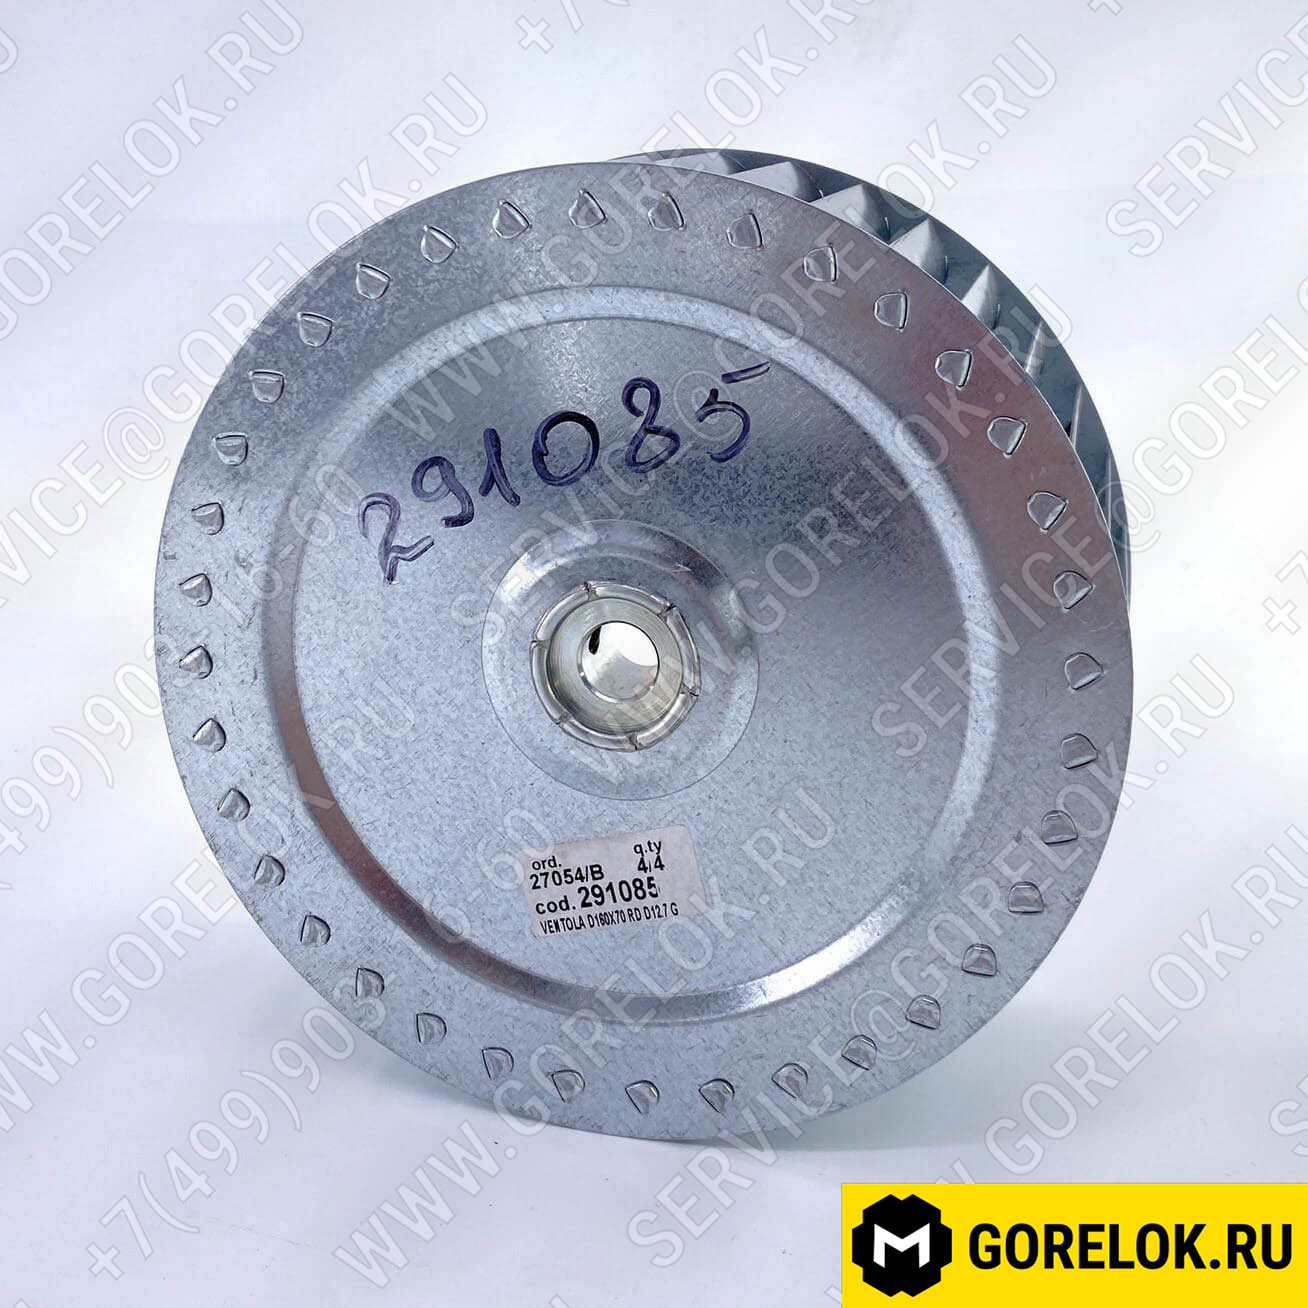 Вентилятор (крыльчатка/лопастное колесо) Ø160 X 70 мм : 291085-FB